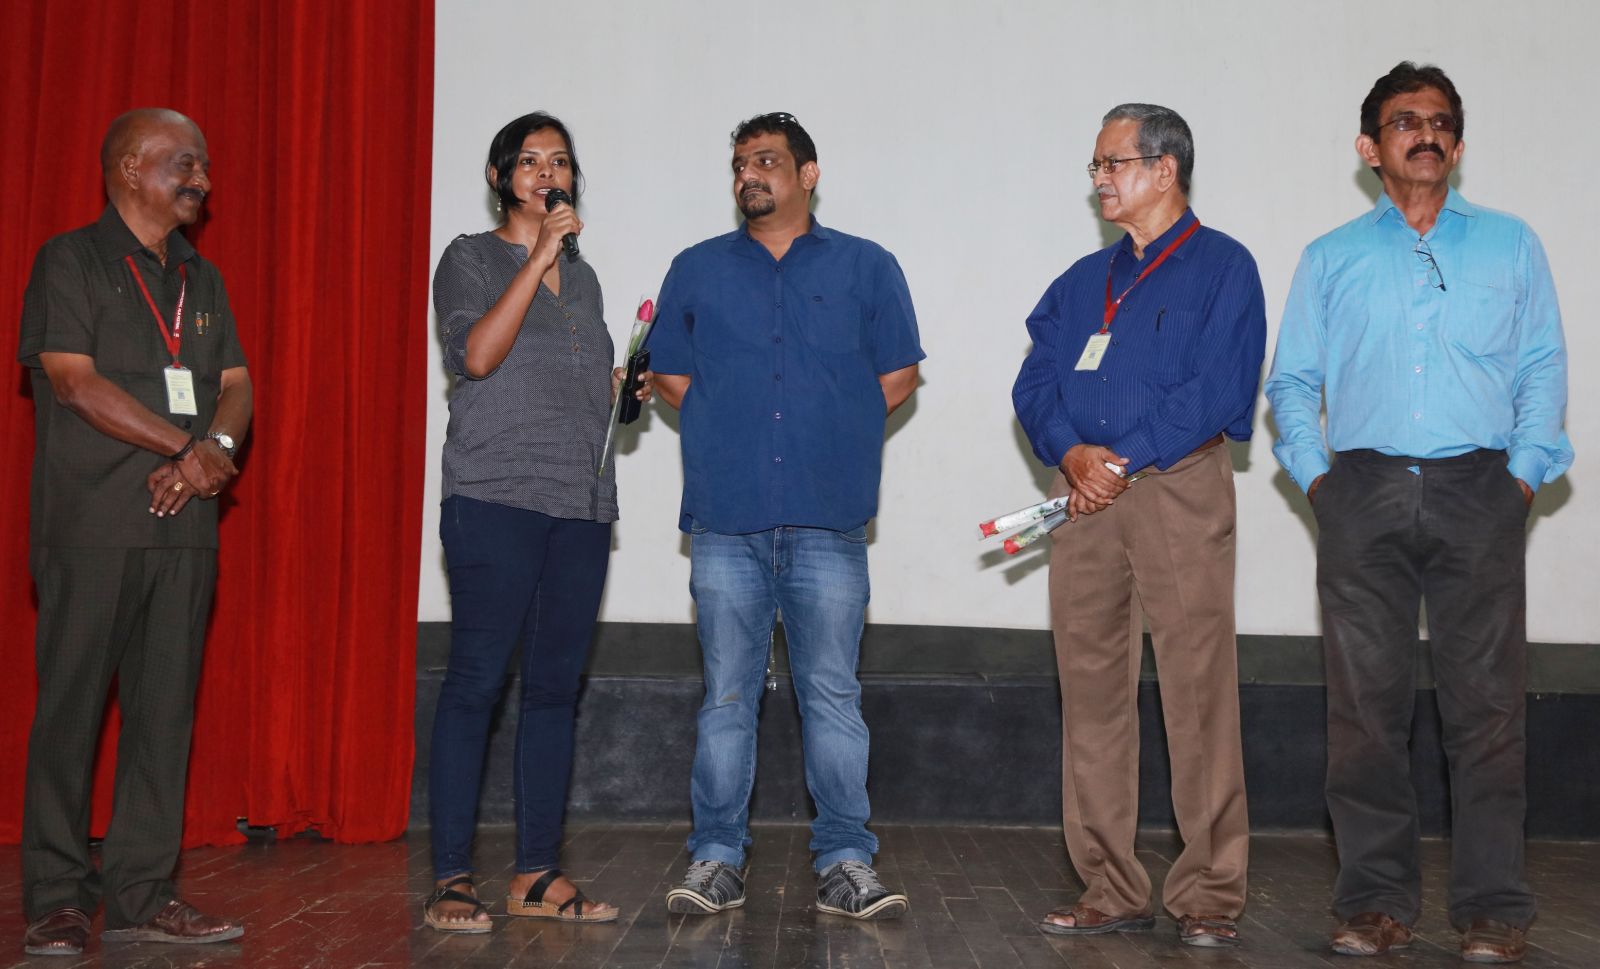 Vikram Vedha Directors Pushkar – Gayathri at 15th Chennai International Film Festival Pics (6)